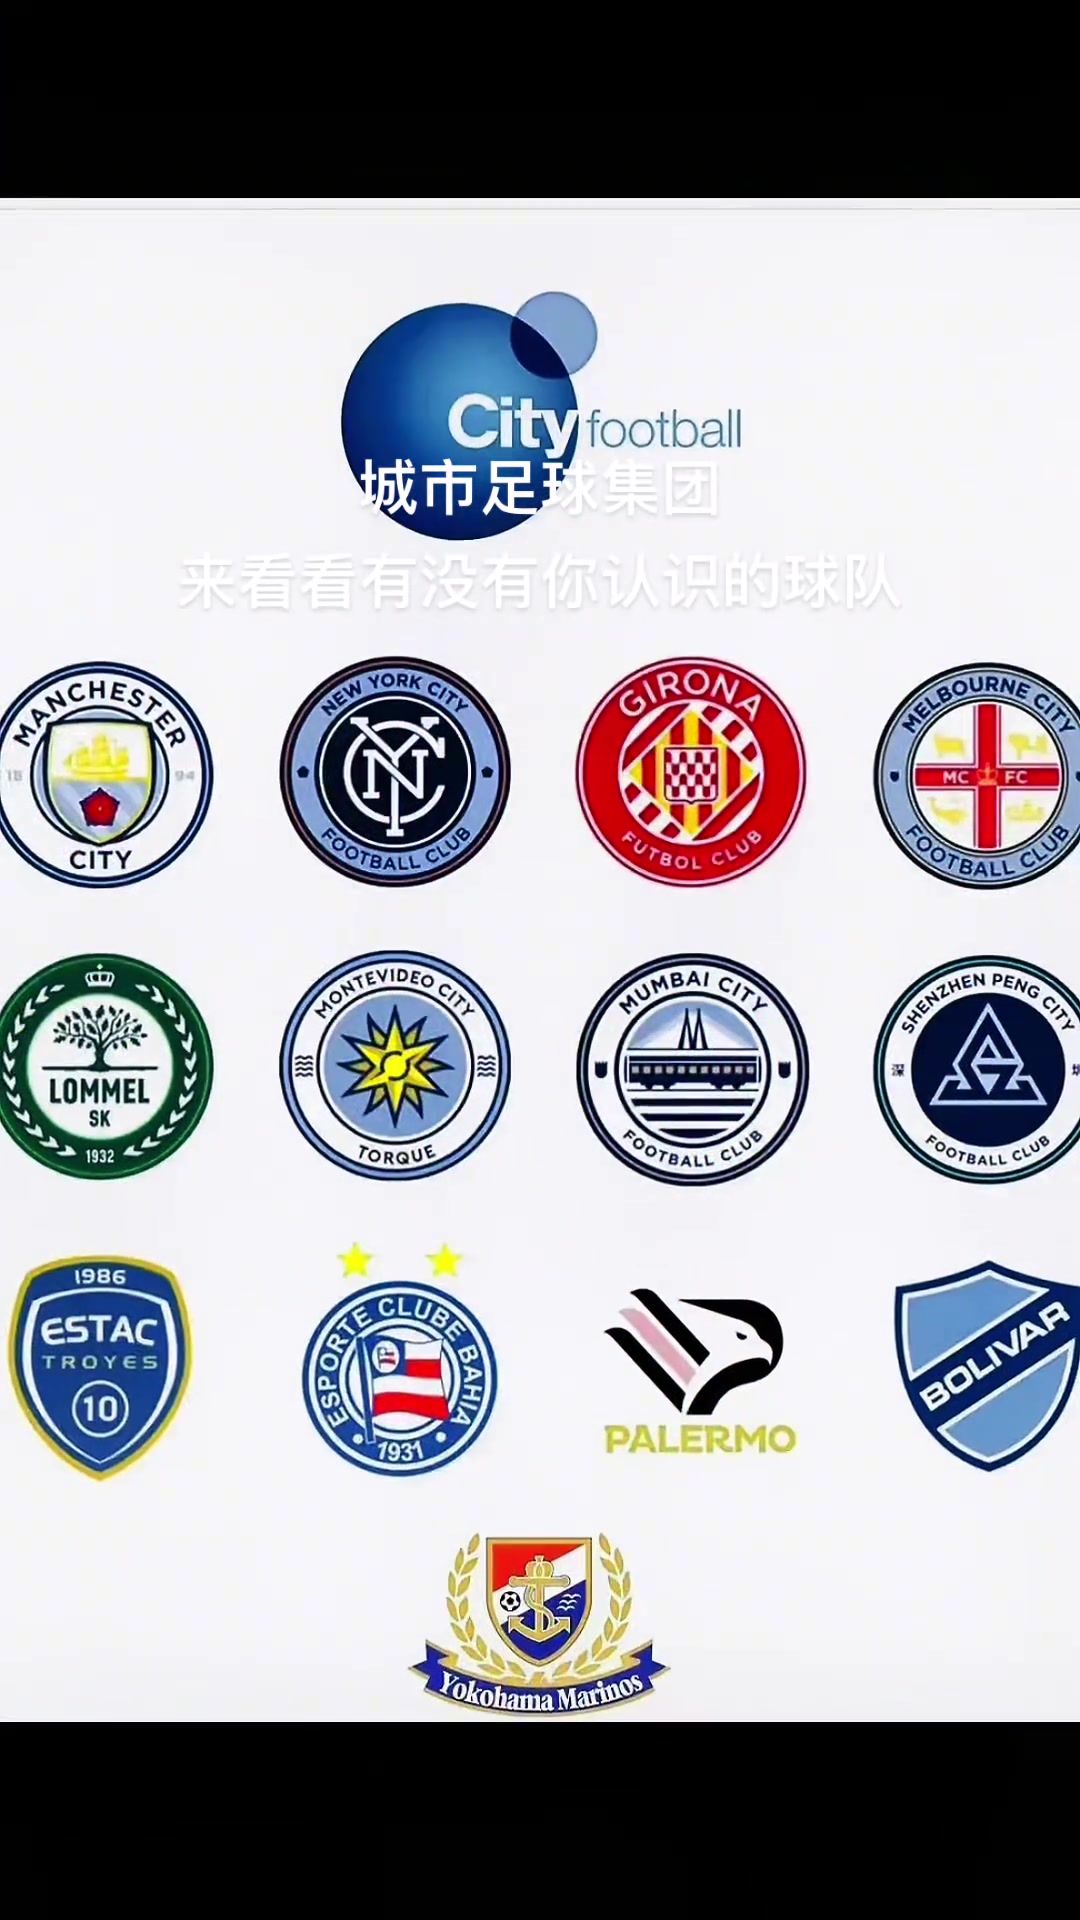 城市足球集团旗下的足球俱乐部